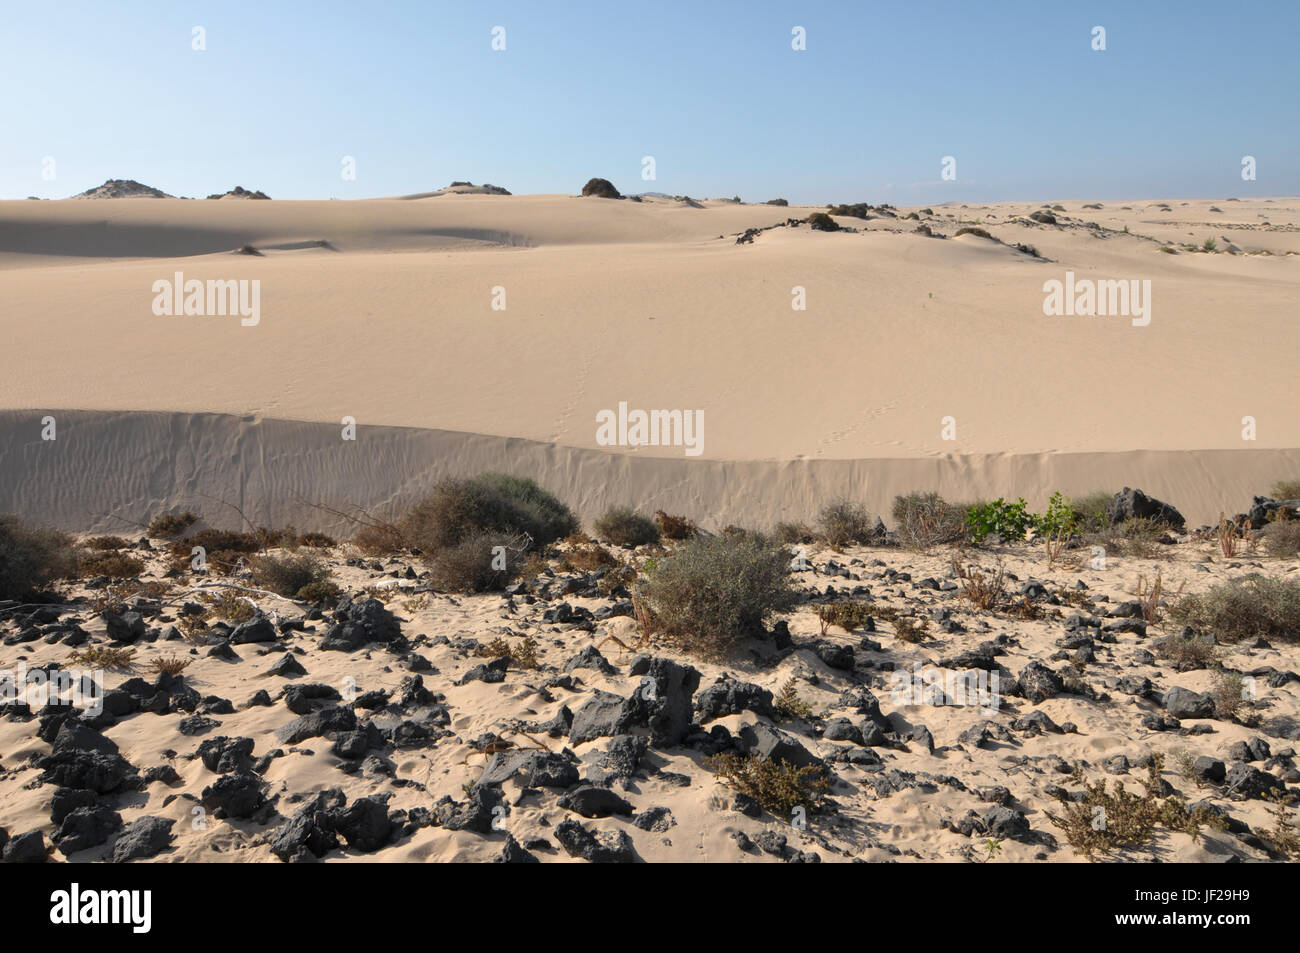 Starting point of the desert Stock Photo